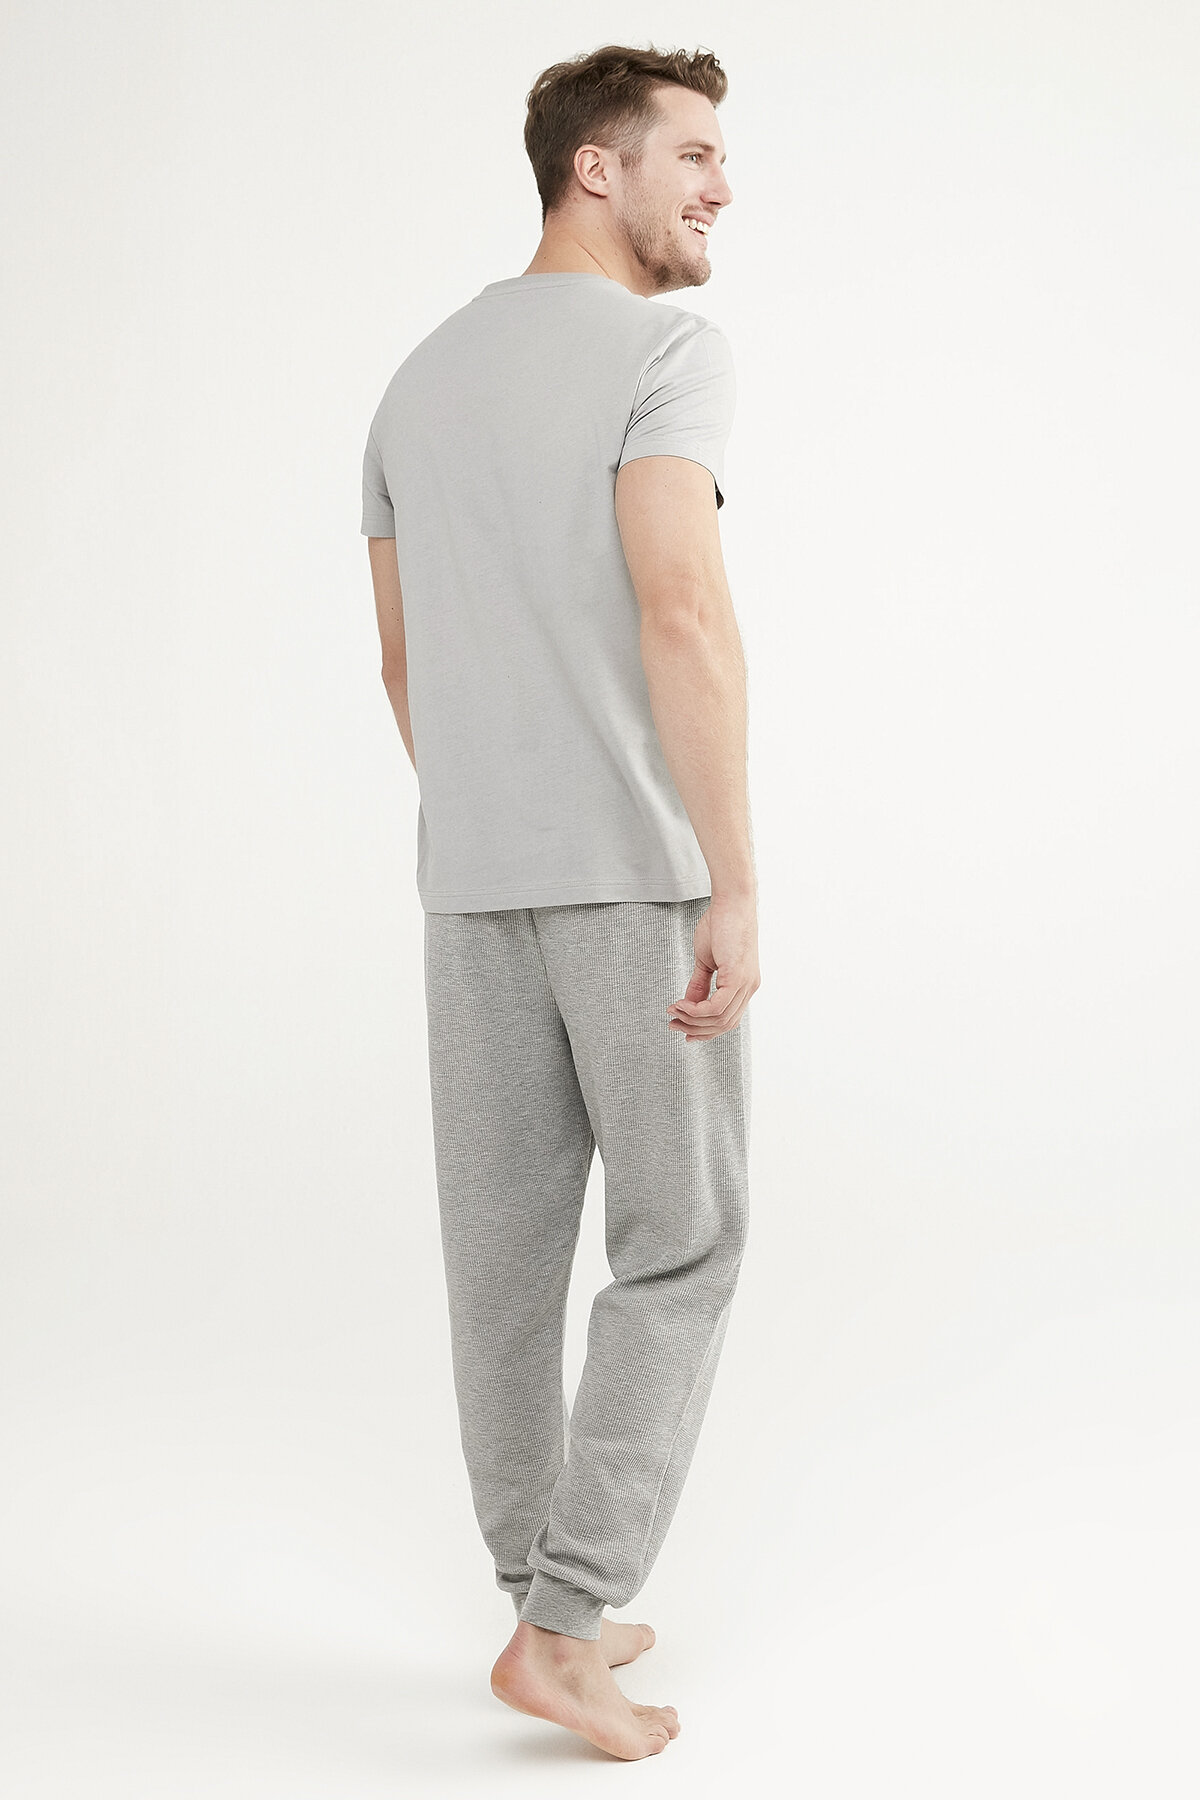 Grey V-Neck pidžama set